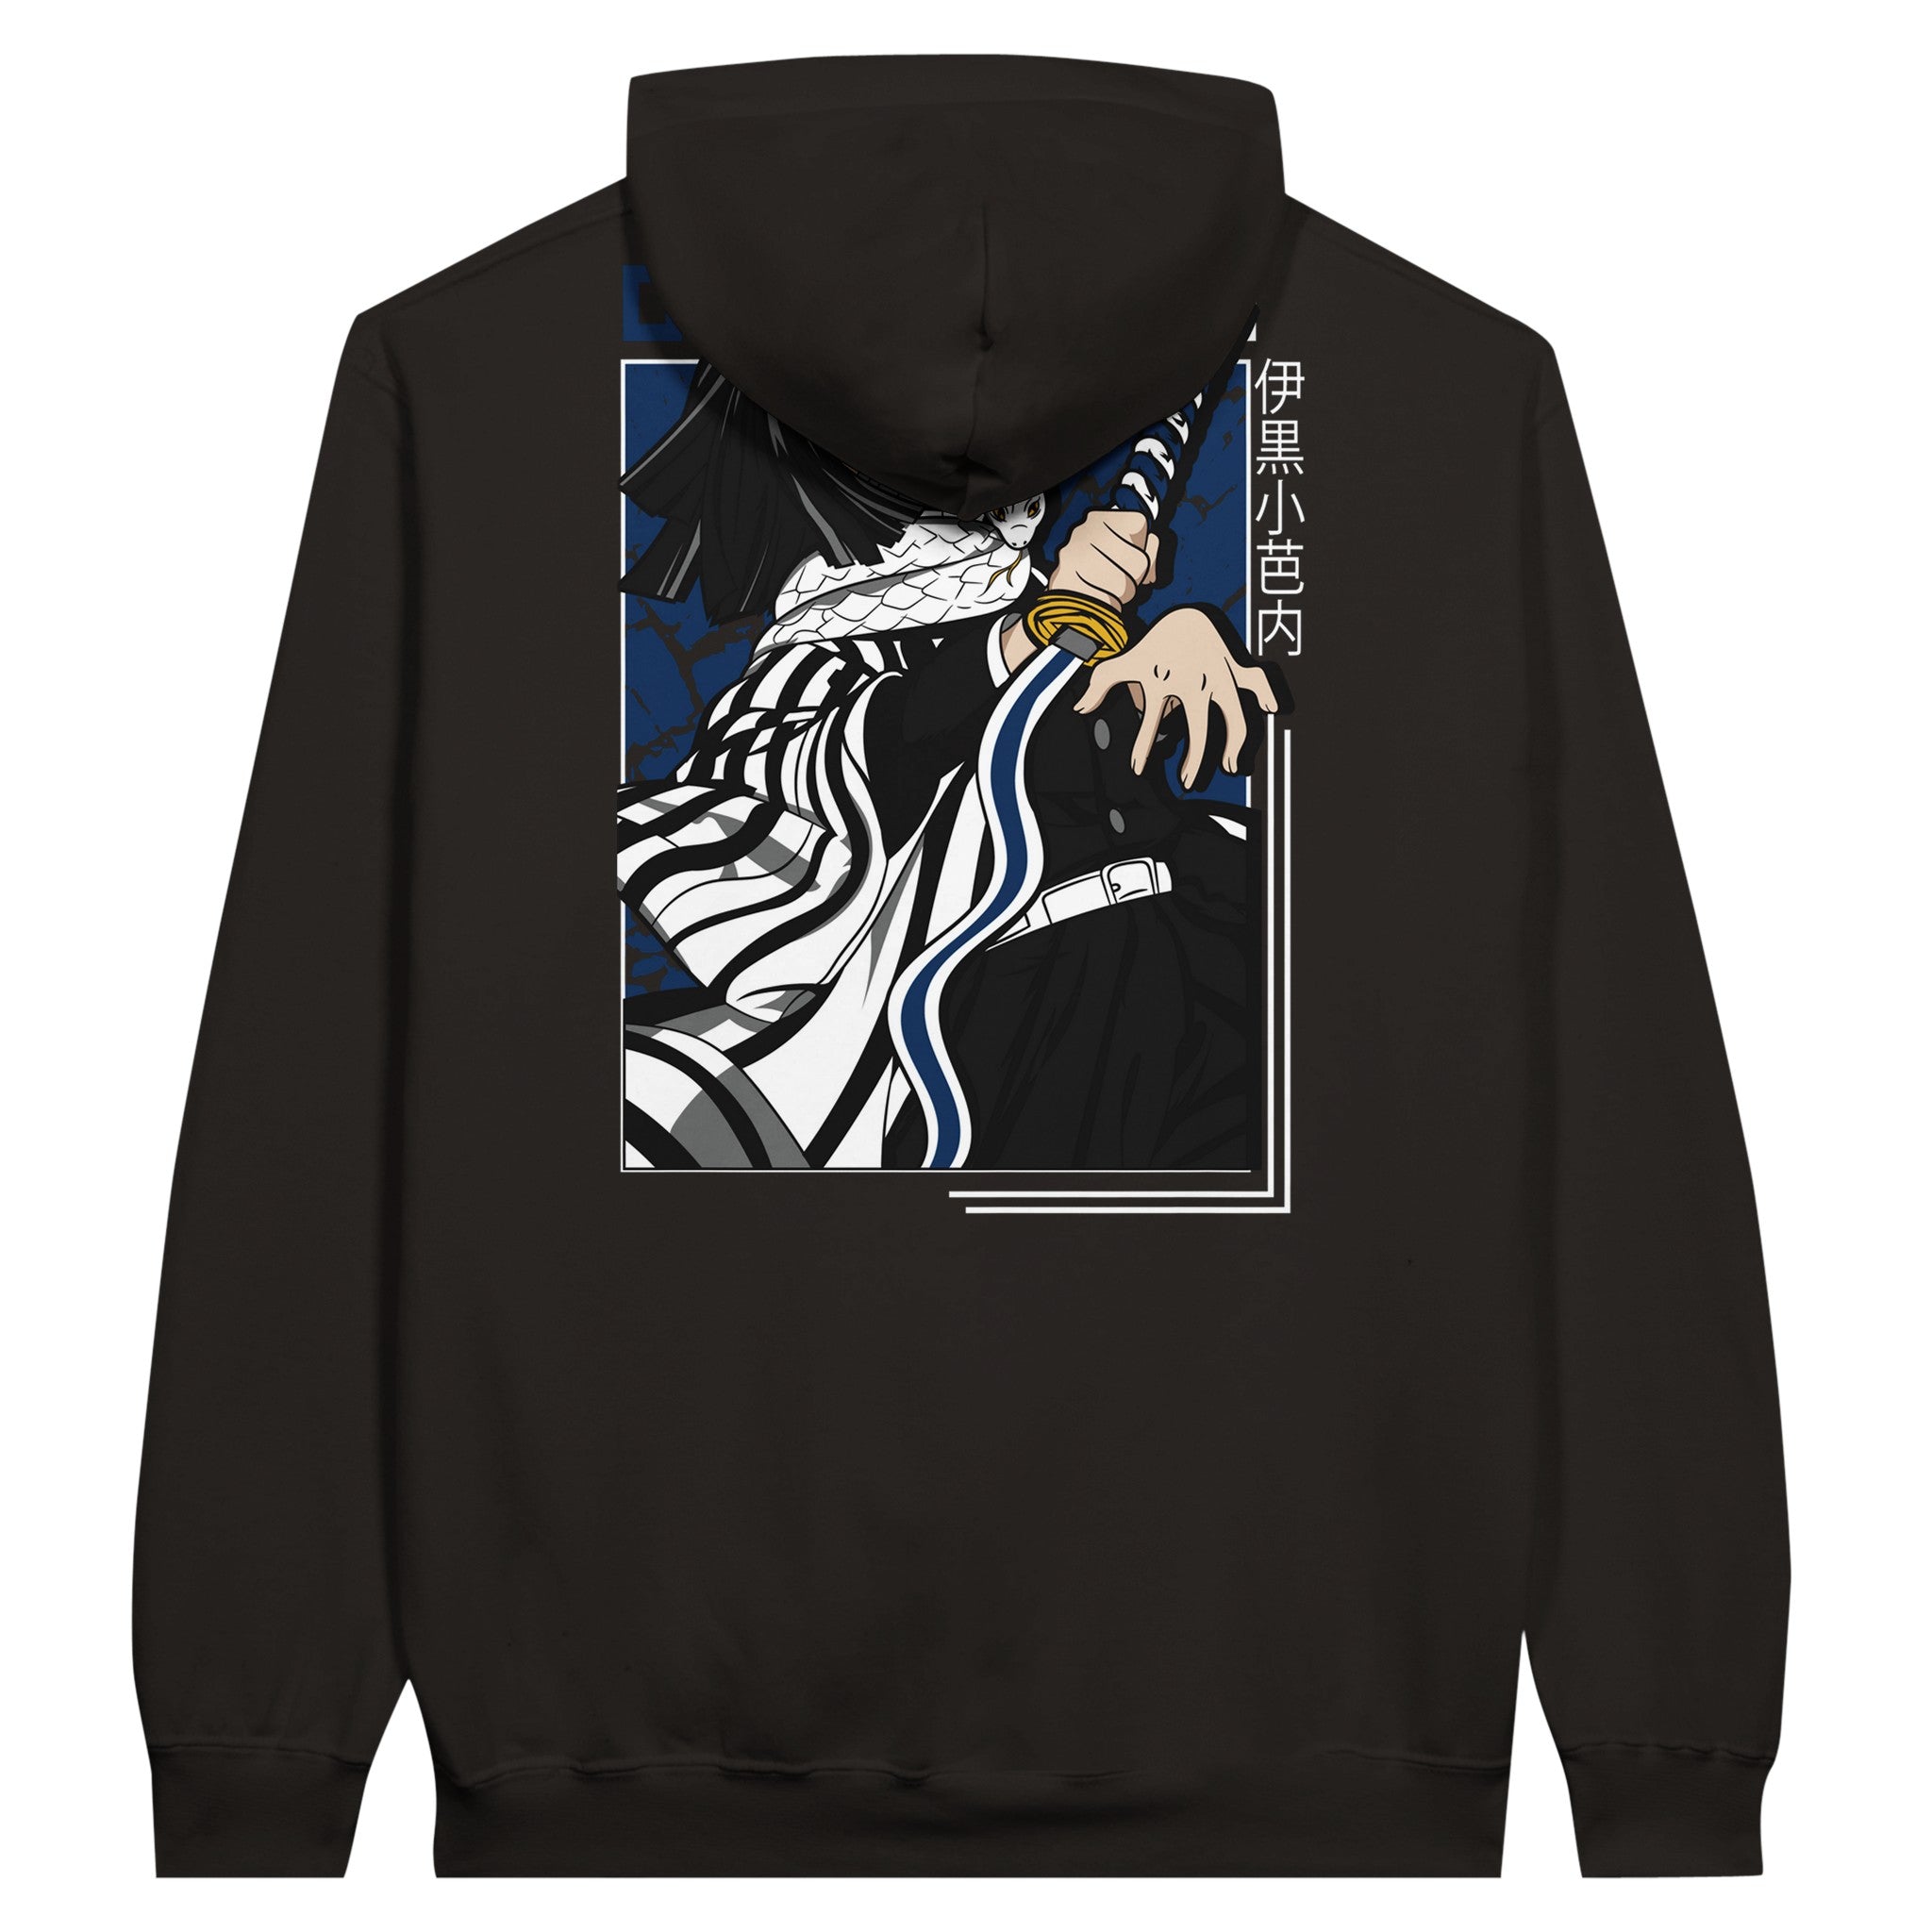 shop and buy demon slayer anime clothing obanai hoodie